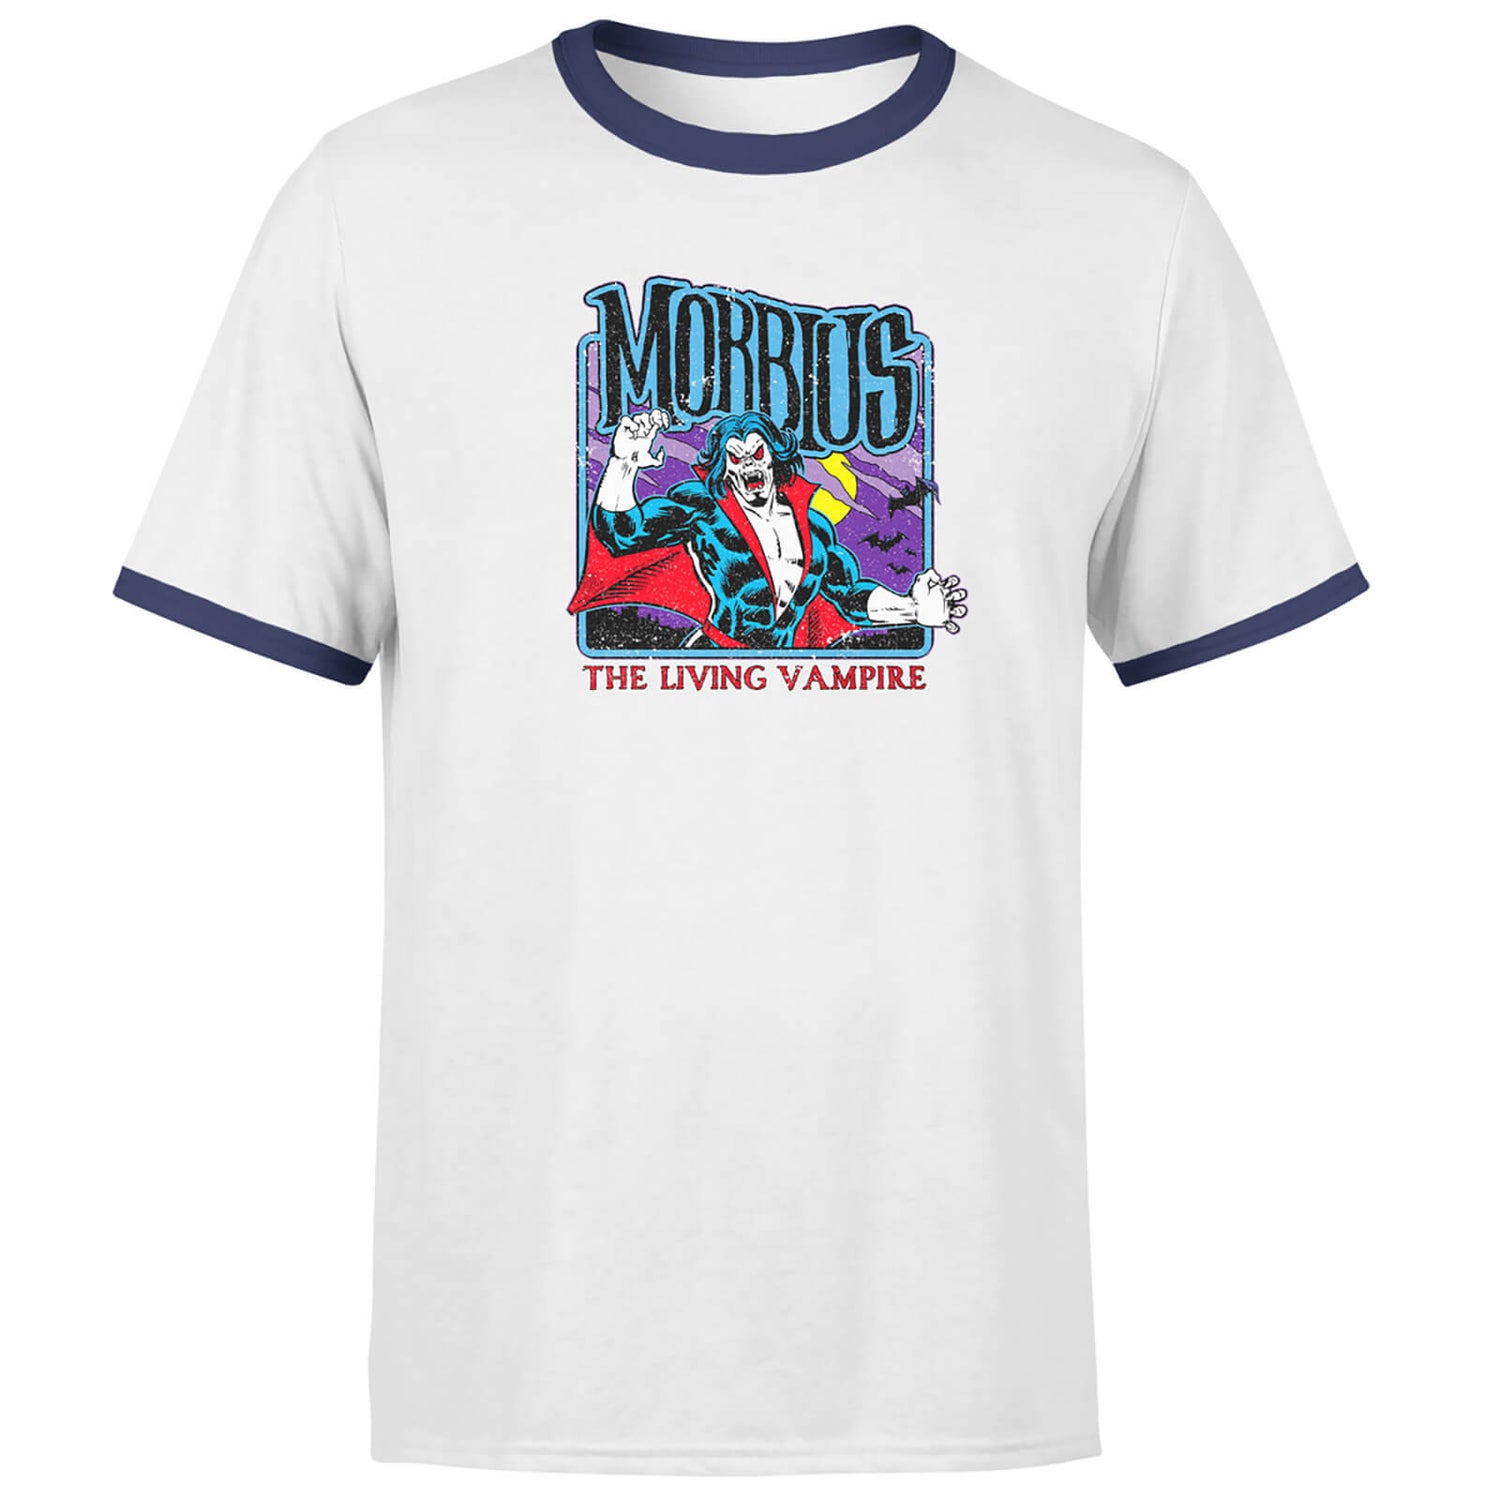 Morbius The Living Vampire Men's Ringer T-Shirt - White/Navy